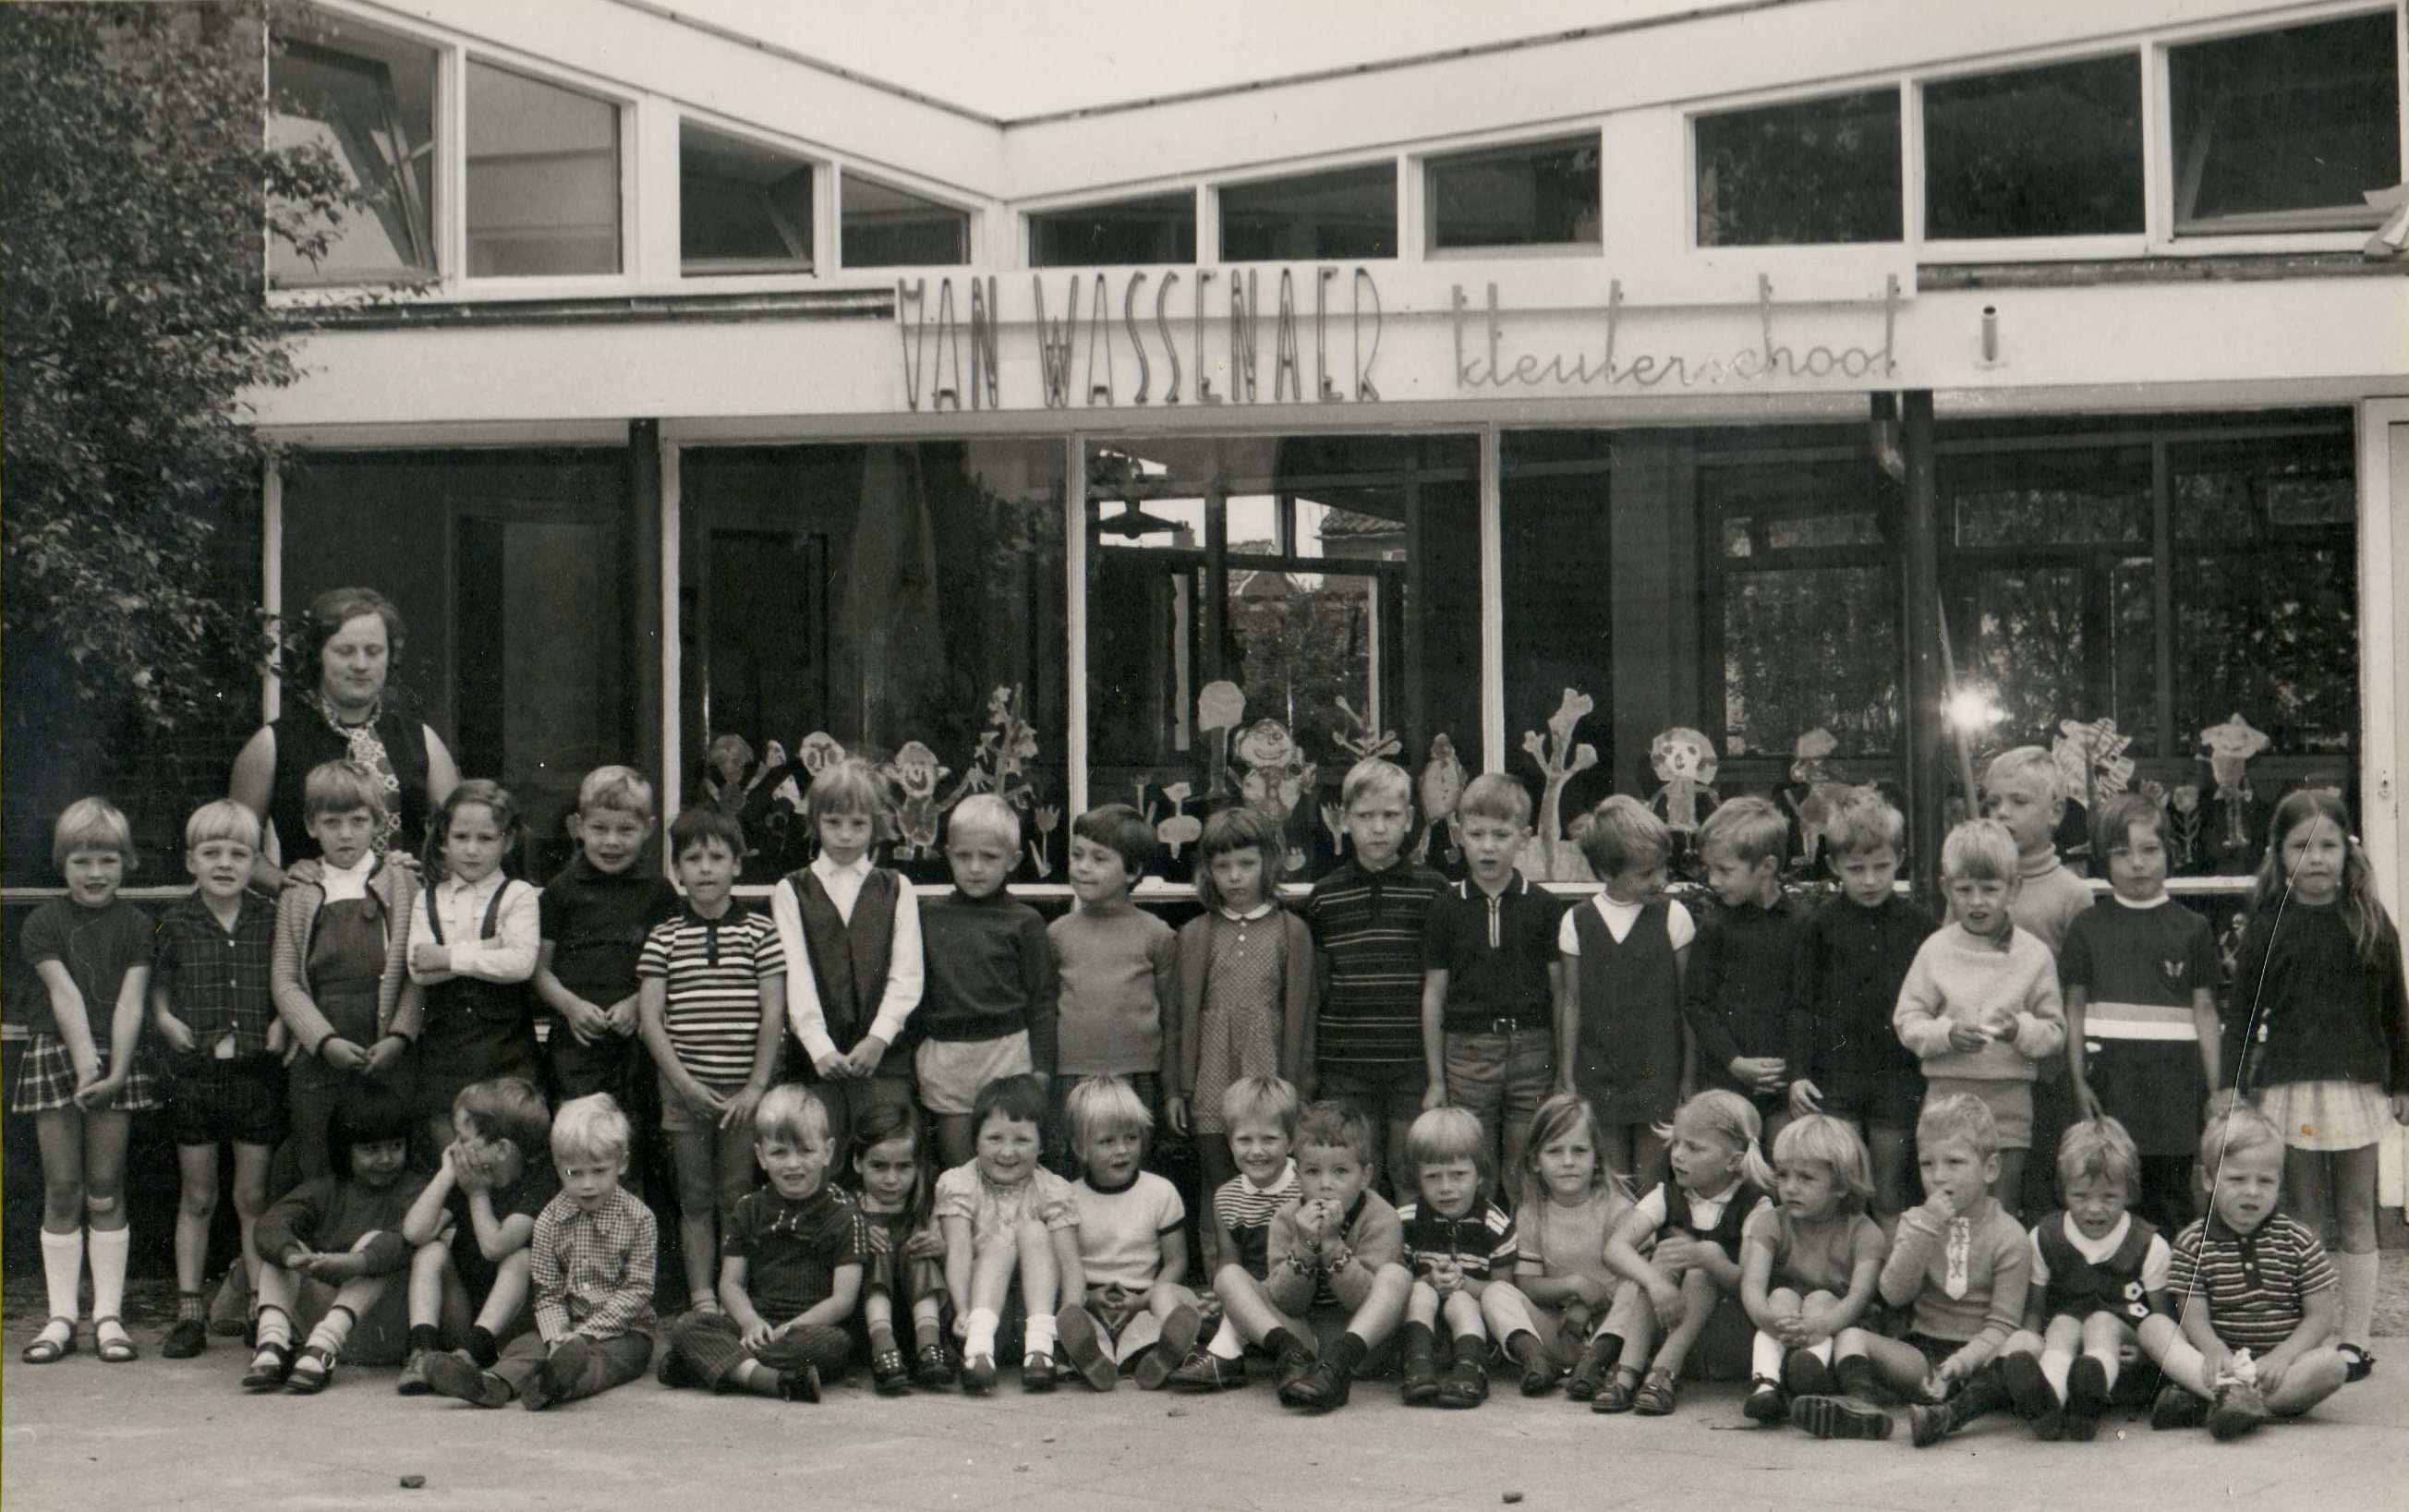 Van Wassenaer kleuterschool foto